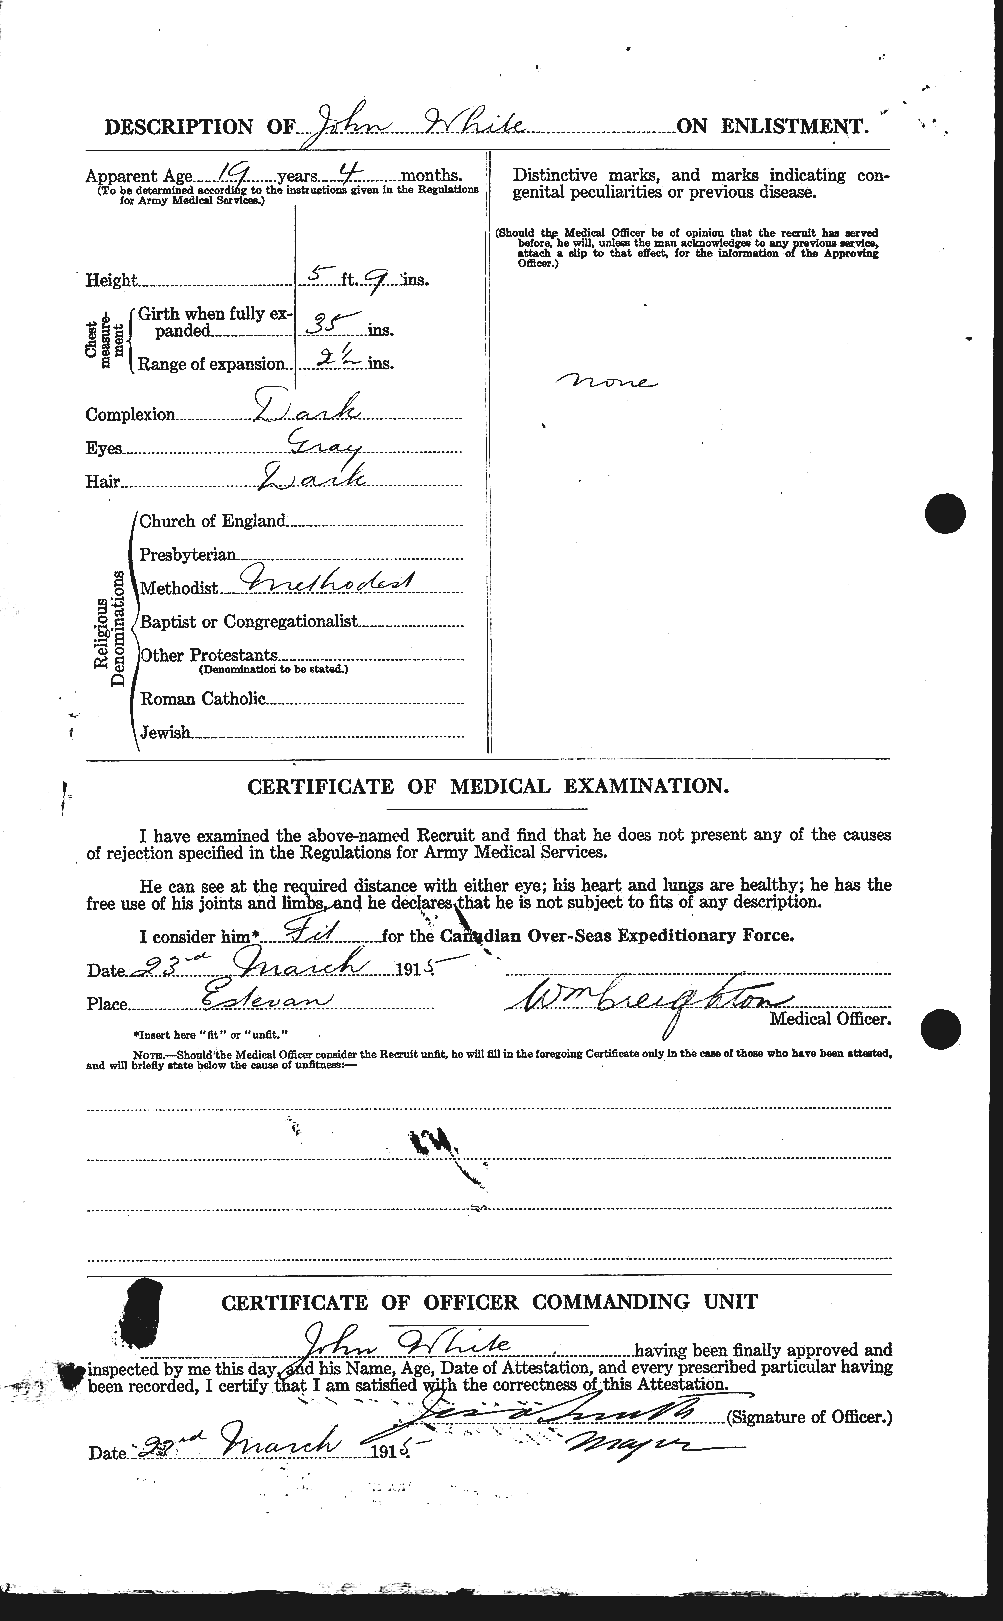 Dossiers du Personnel de la Première Guerre mondiale - CEC 671488b